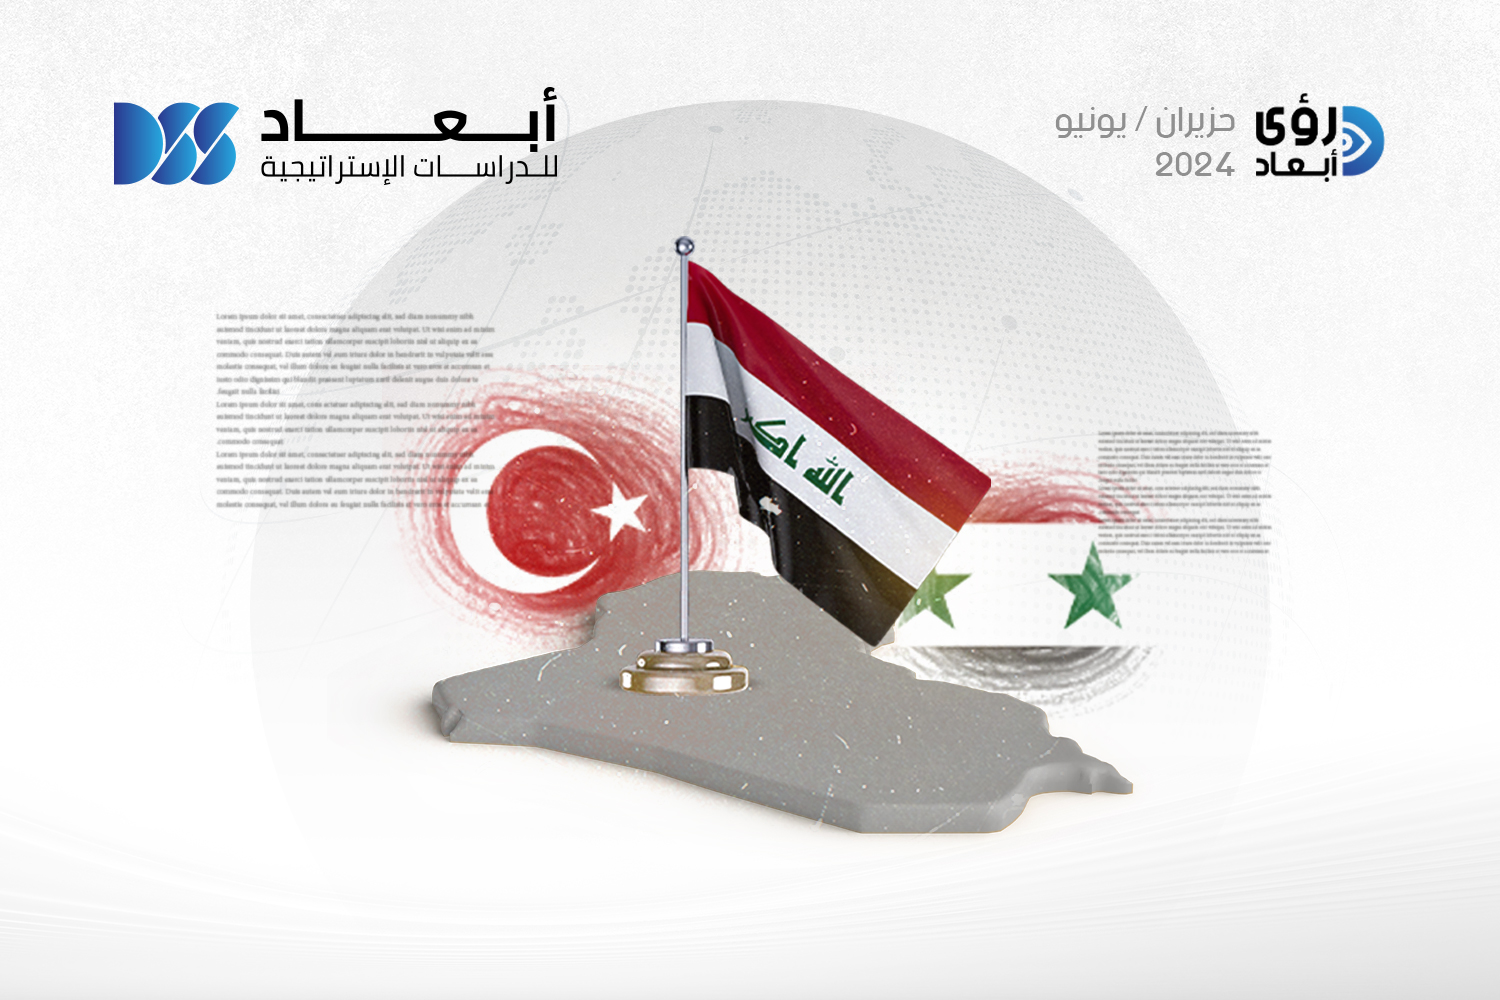 العراق والبحث عن مصالَحة إقليمية جديدة بين تركيا والنظام السوري